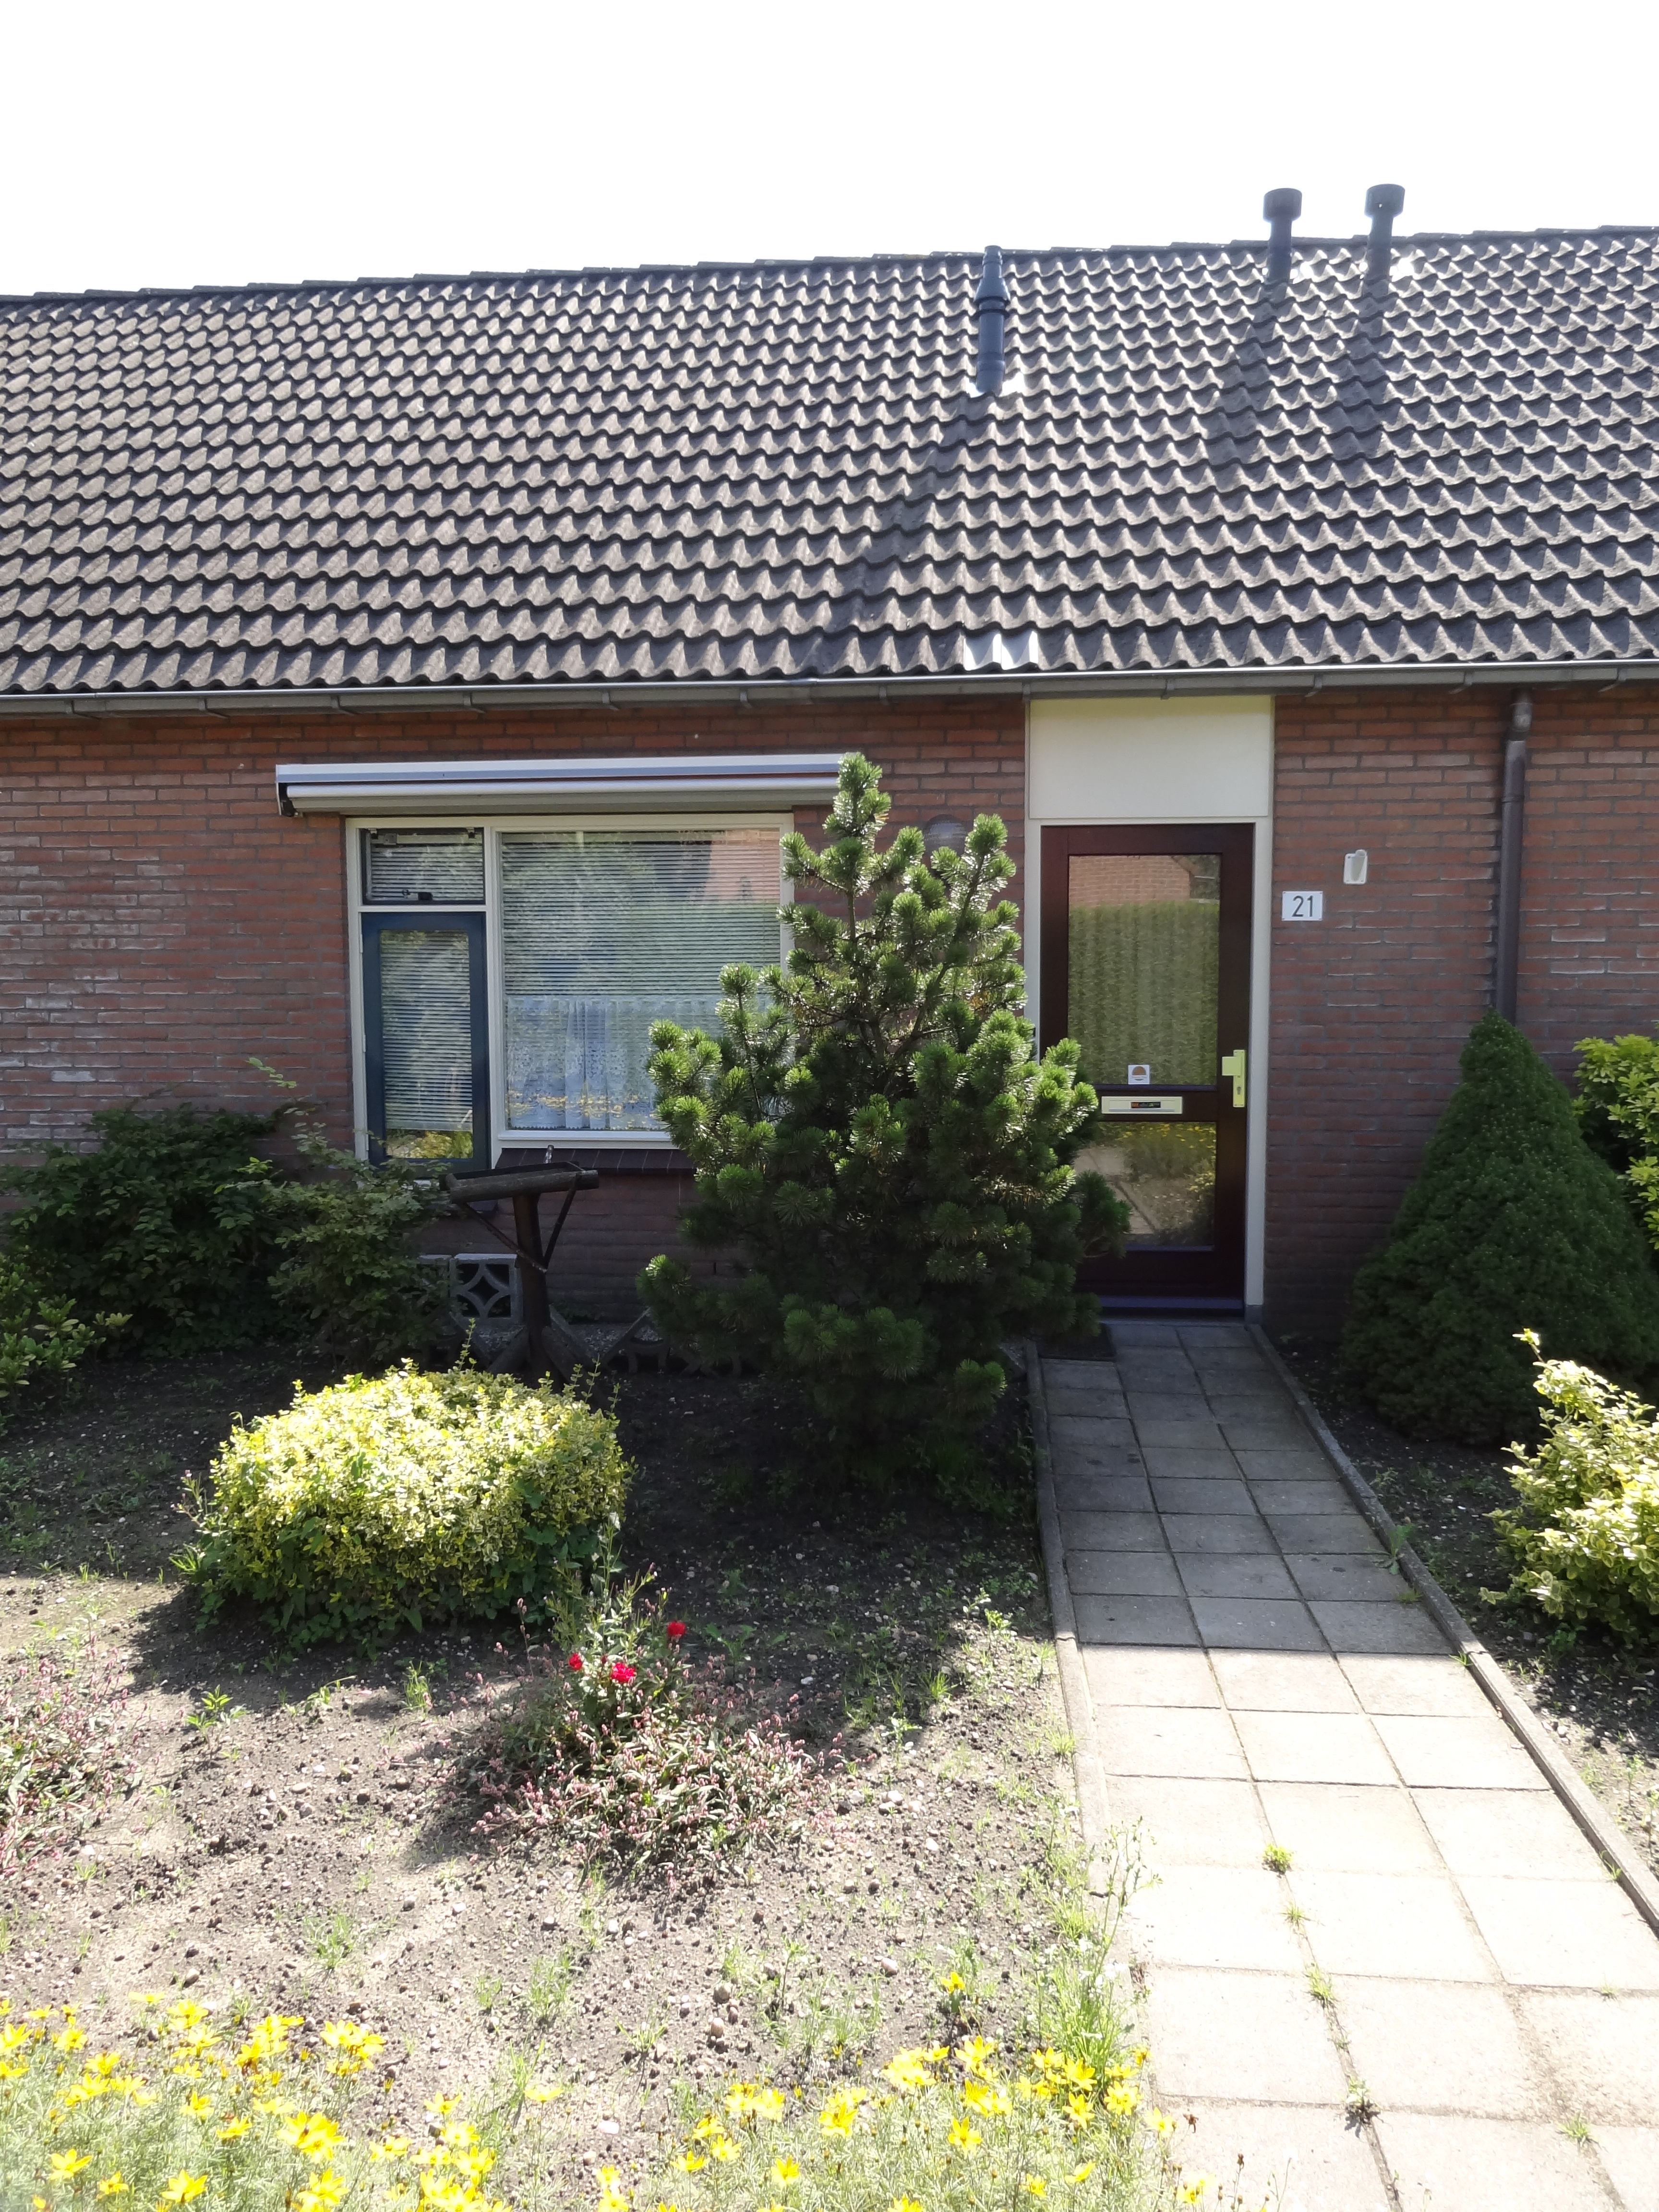 Doornbosch Hofstede 21, 6961 MC Eerbeek, Nederland